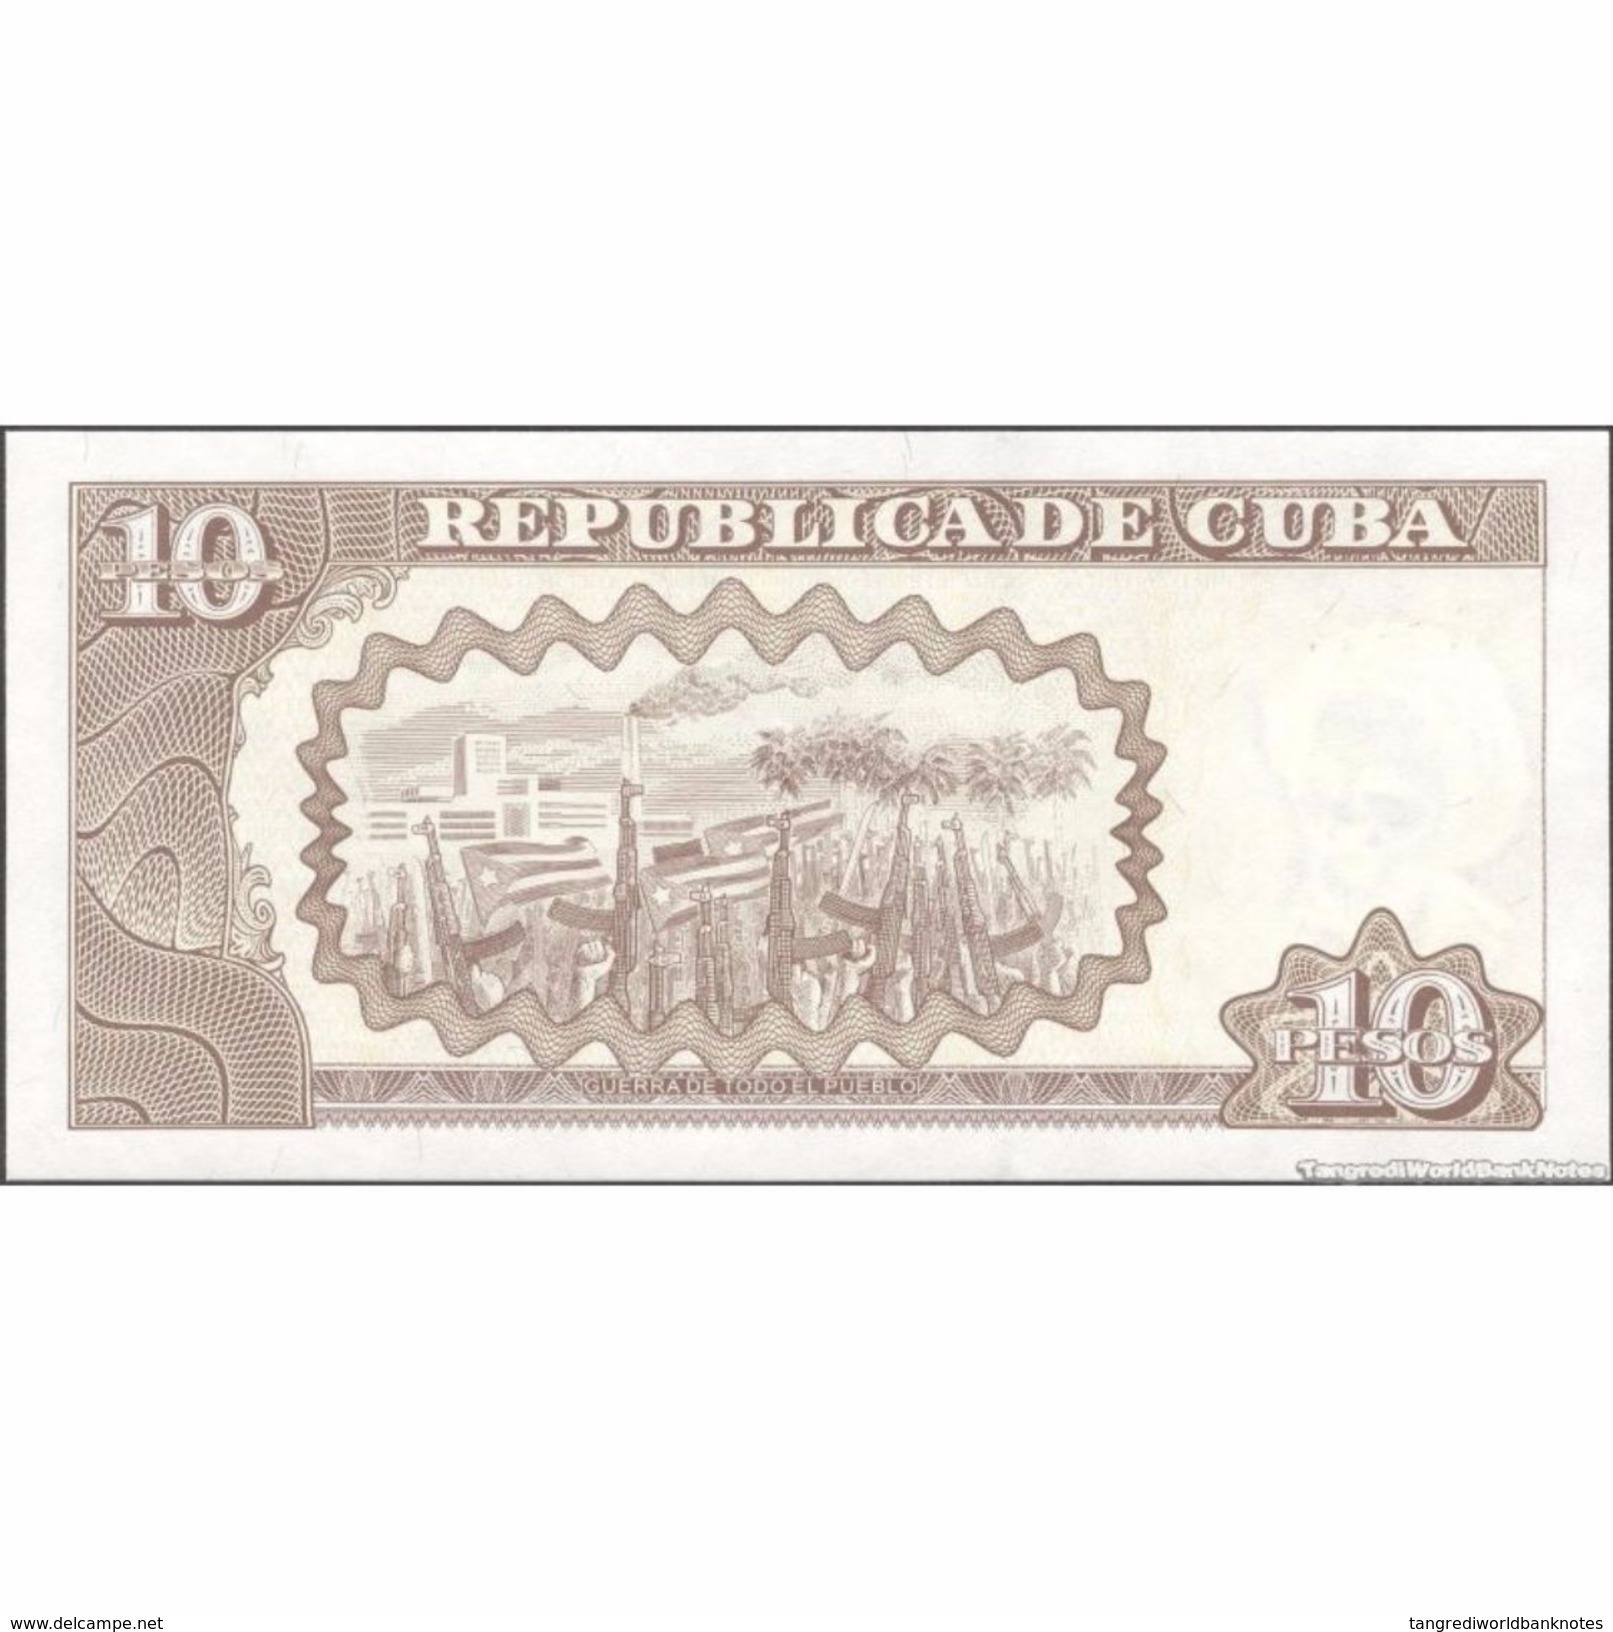 TWN - CUBA 117k - 10 Pesos 2009 Serie DK-13 AU - Cuba